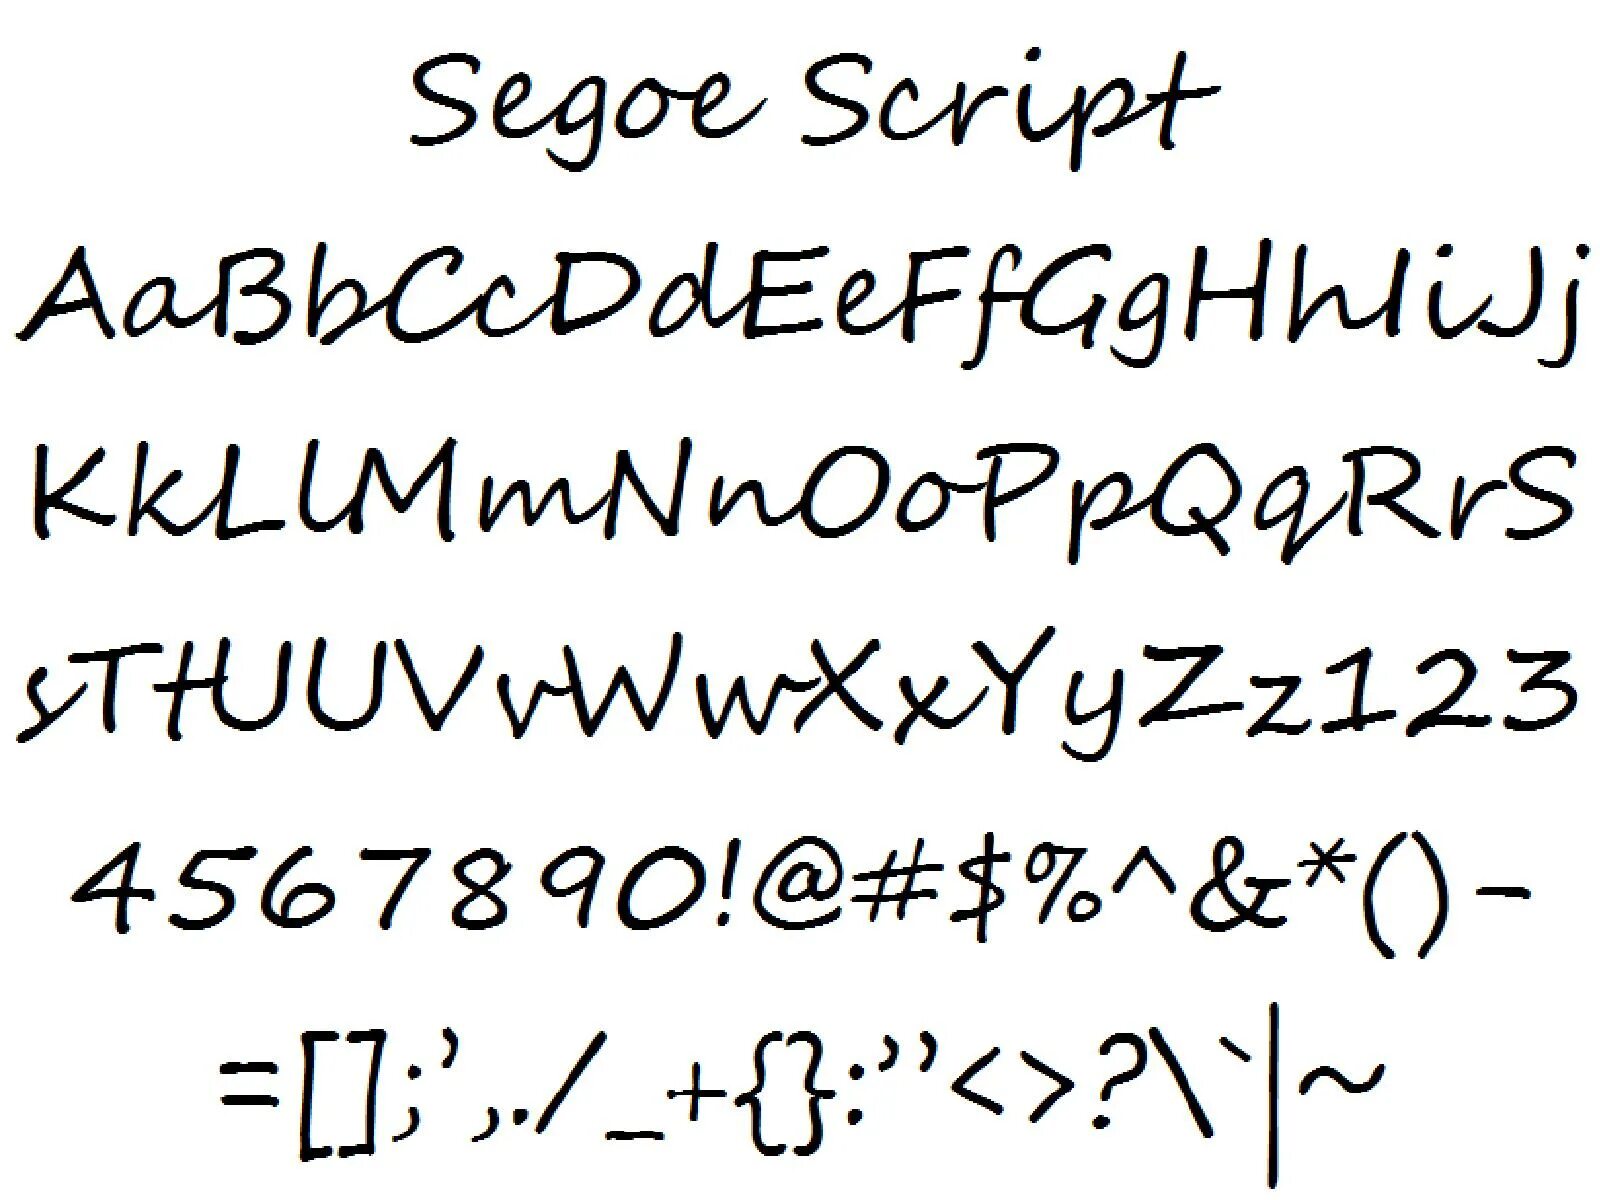 Шрифт Segoe Print. Segoe script шрифт. Segoe UI шрифт. Скрипт Segoe script. Roams script